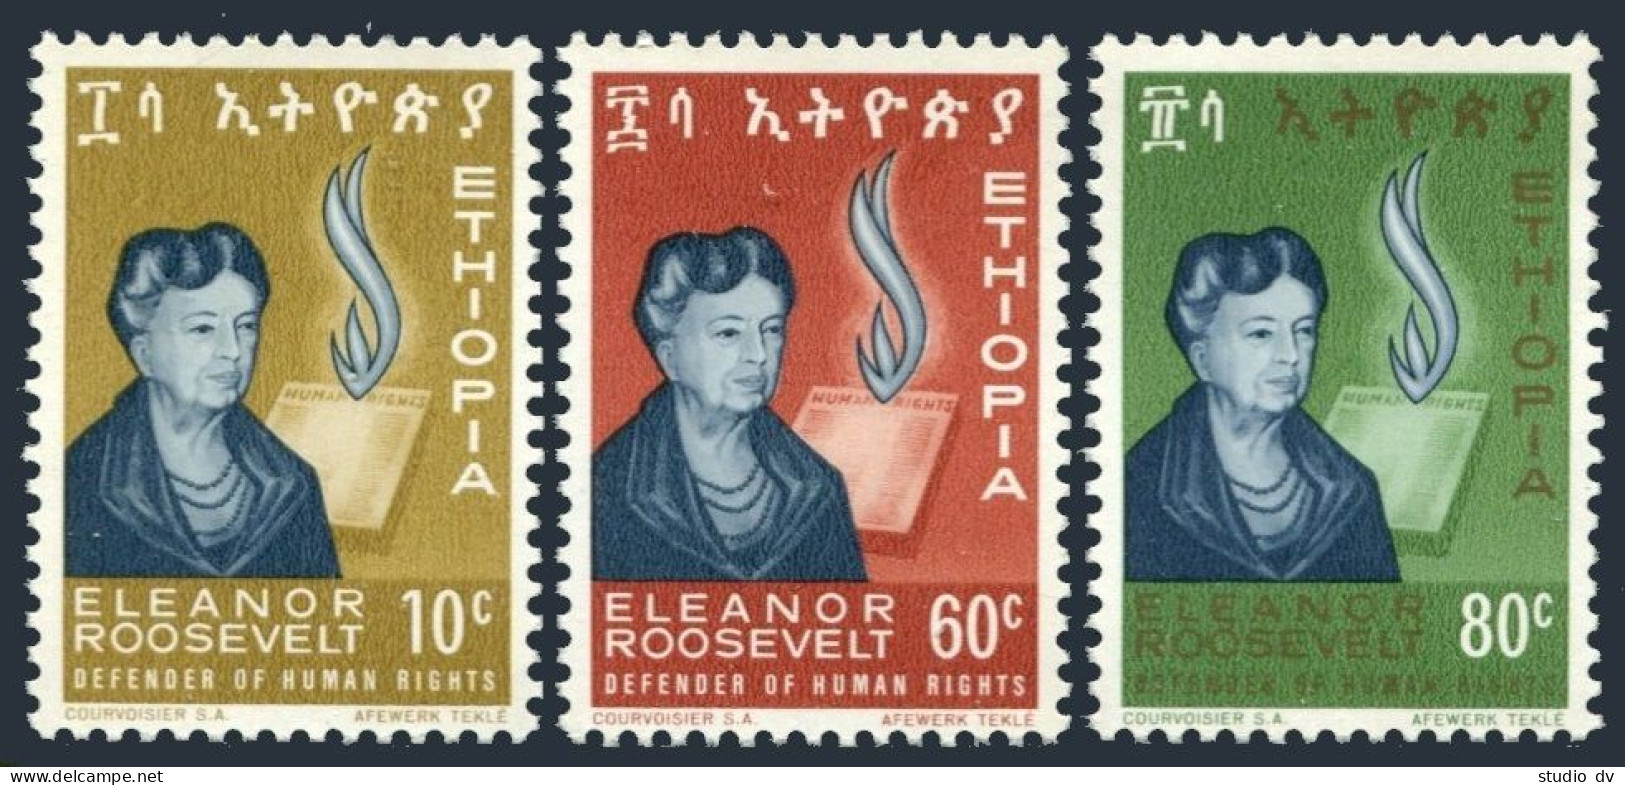 Ethiopia 425-427, MNH. Michel 483-485. Eleanor Roosevelt, 1964. - Ethiopie